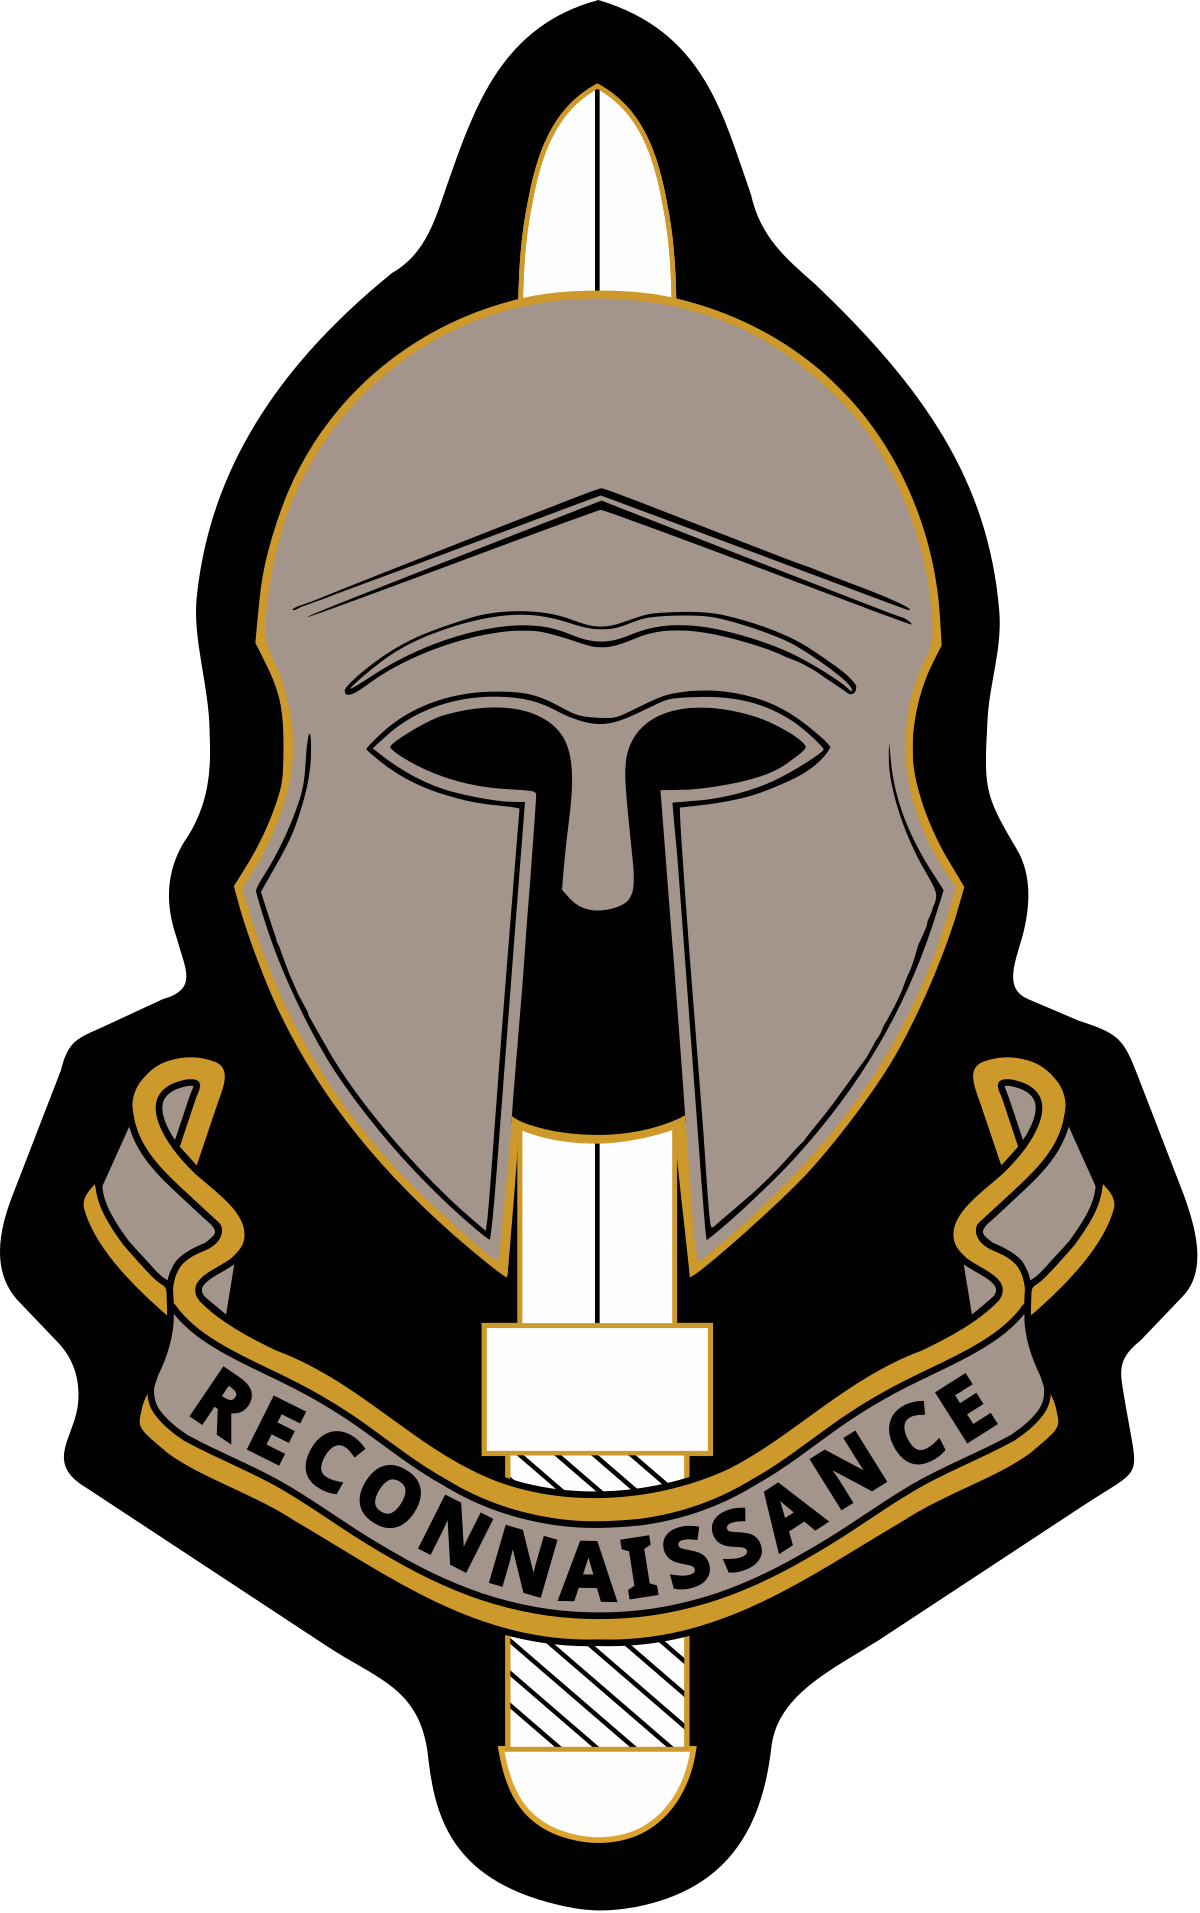 SRR Logo - Special Reconnaissance Regiment